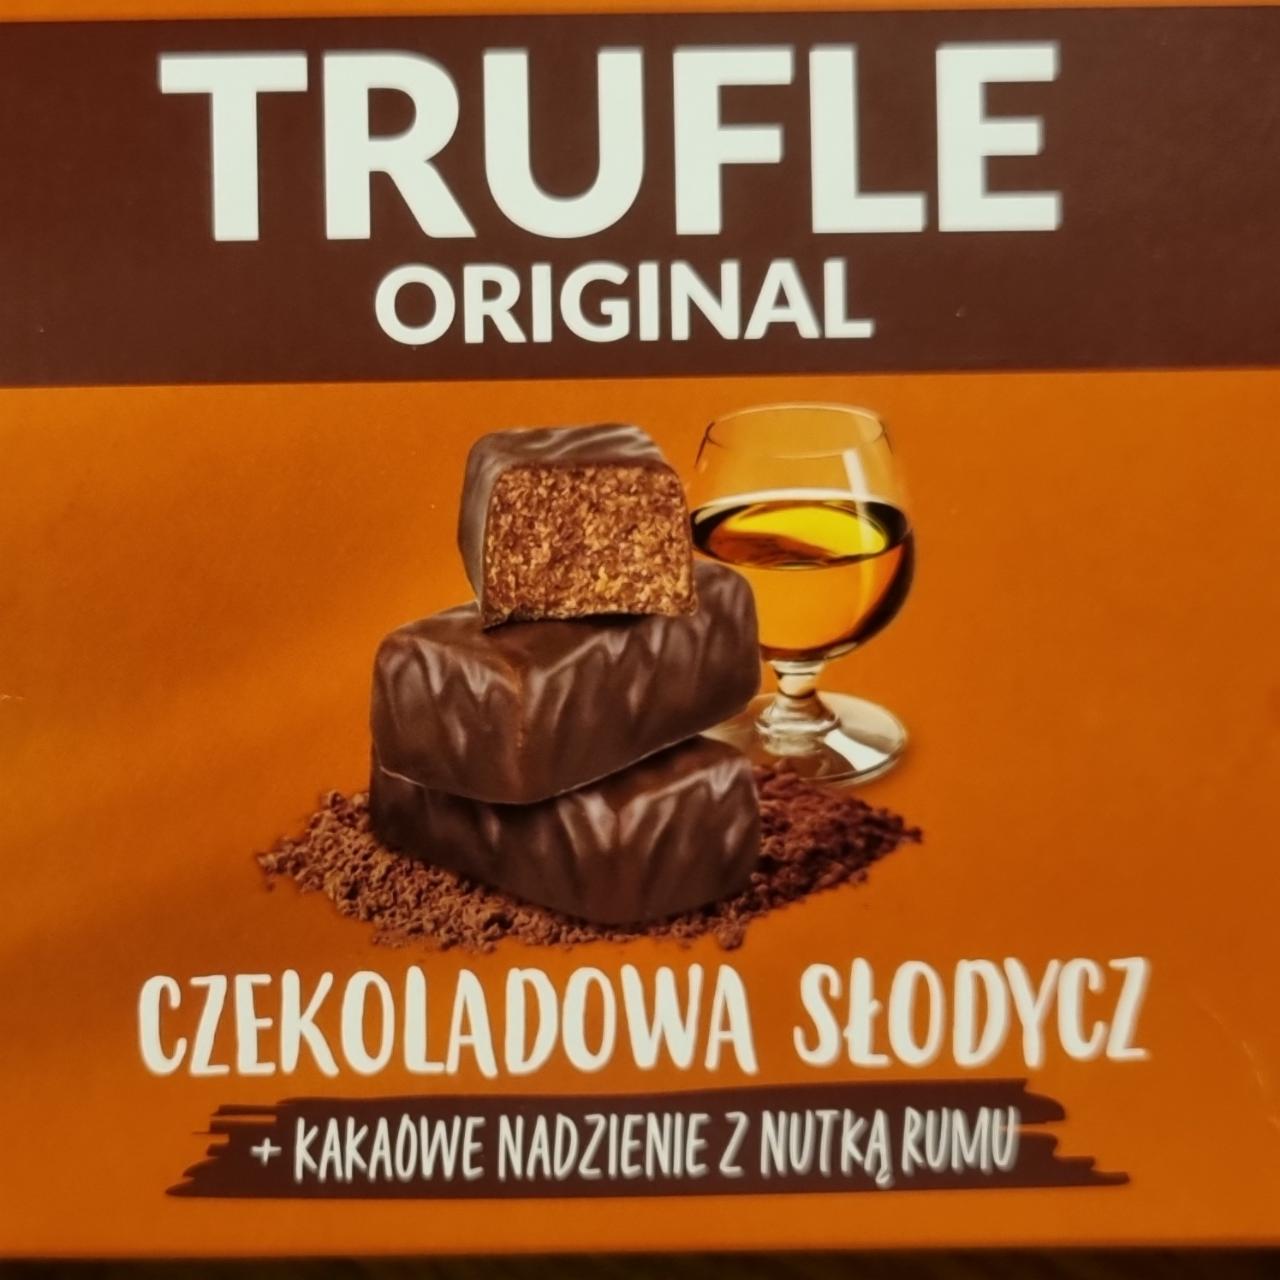 Zdjęcia - Trufle original czekoladowa słodycz + kakaowe nadzienie z nutką rumu Mieszko